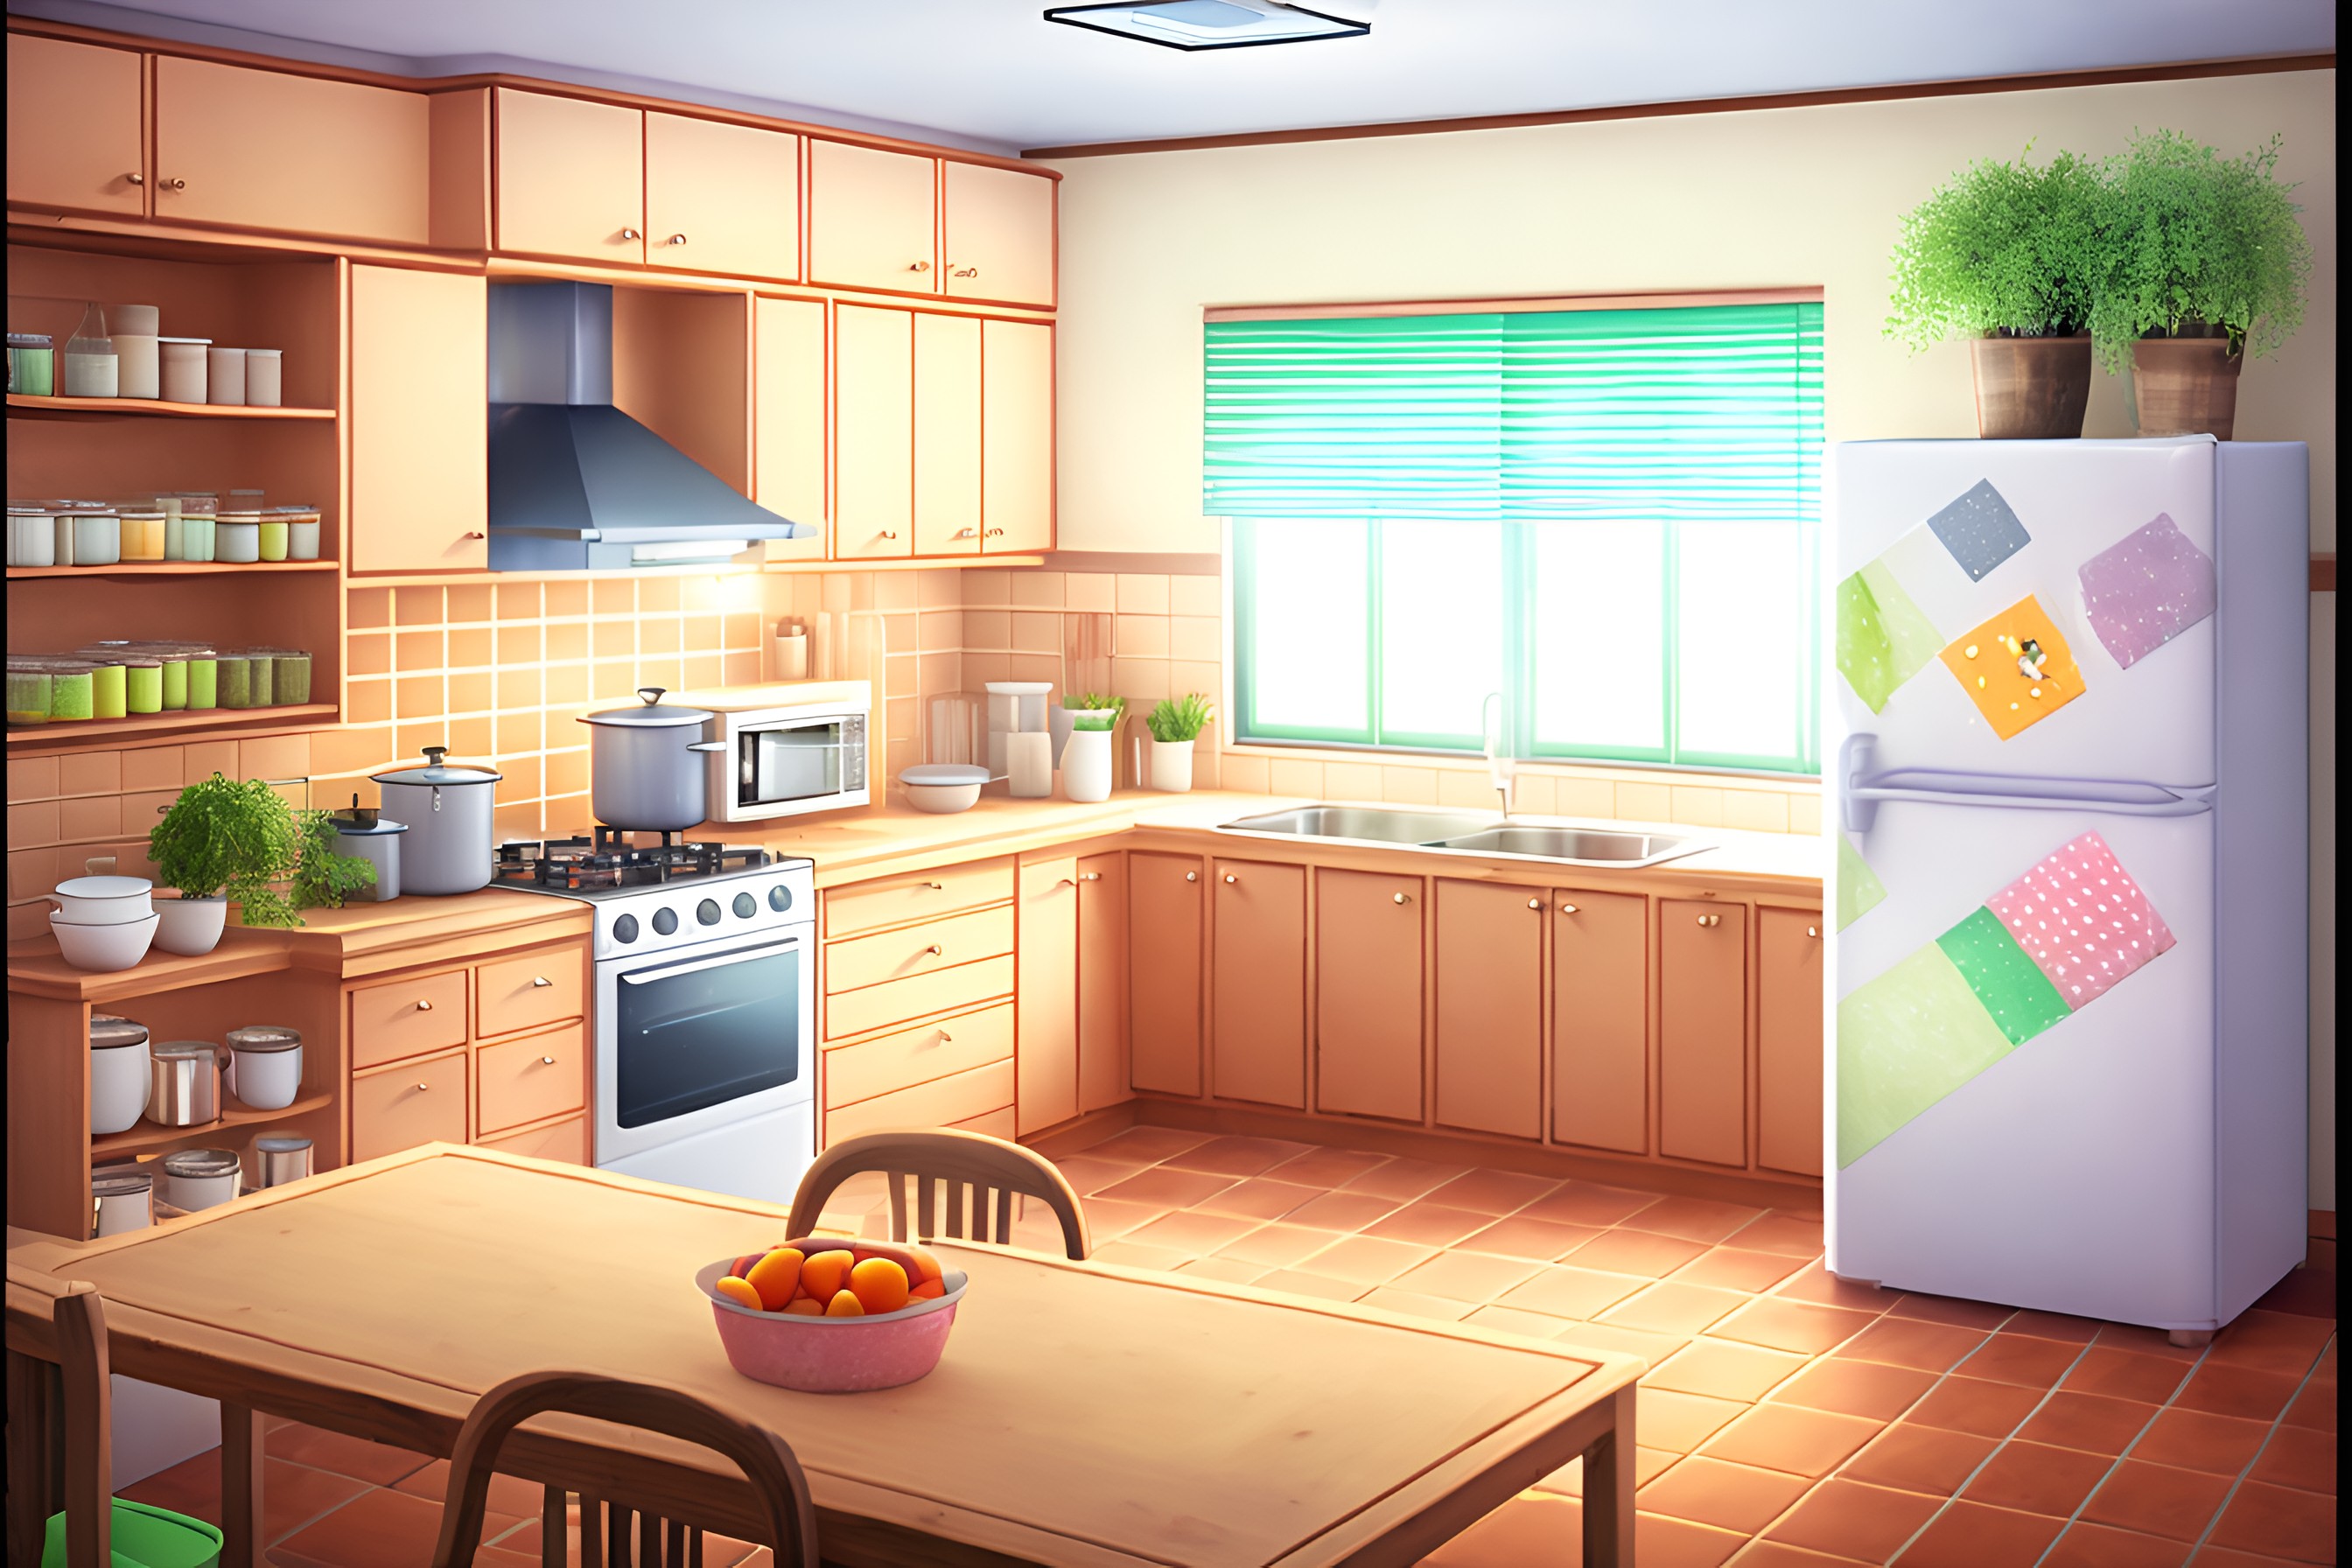 Free HD Cozy Kitchen VN backgrounds by VNA - VisualNovelAssets